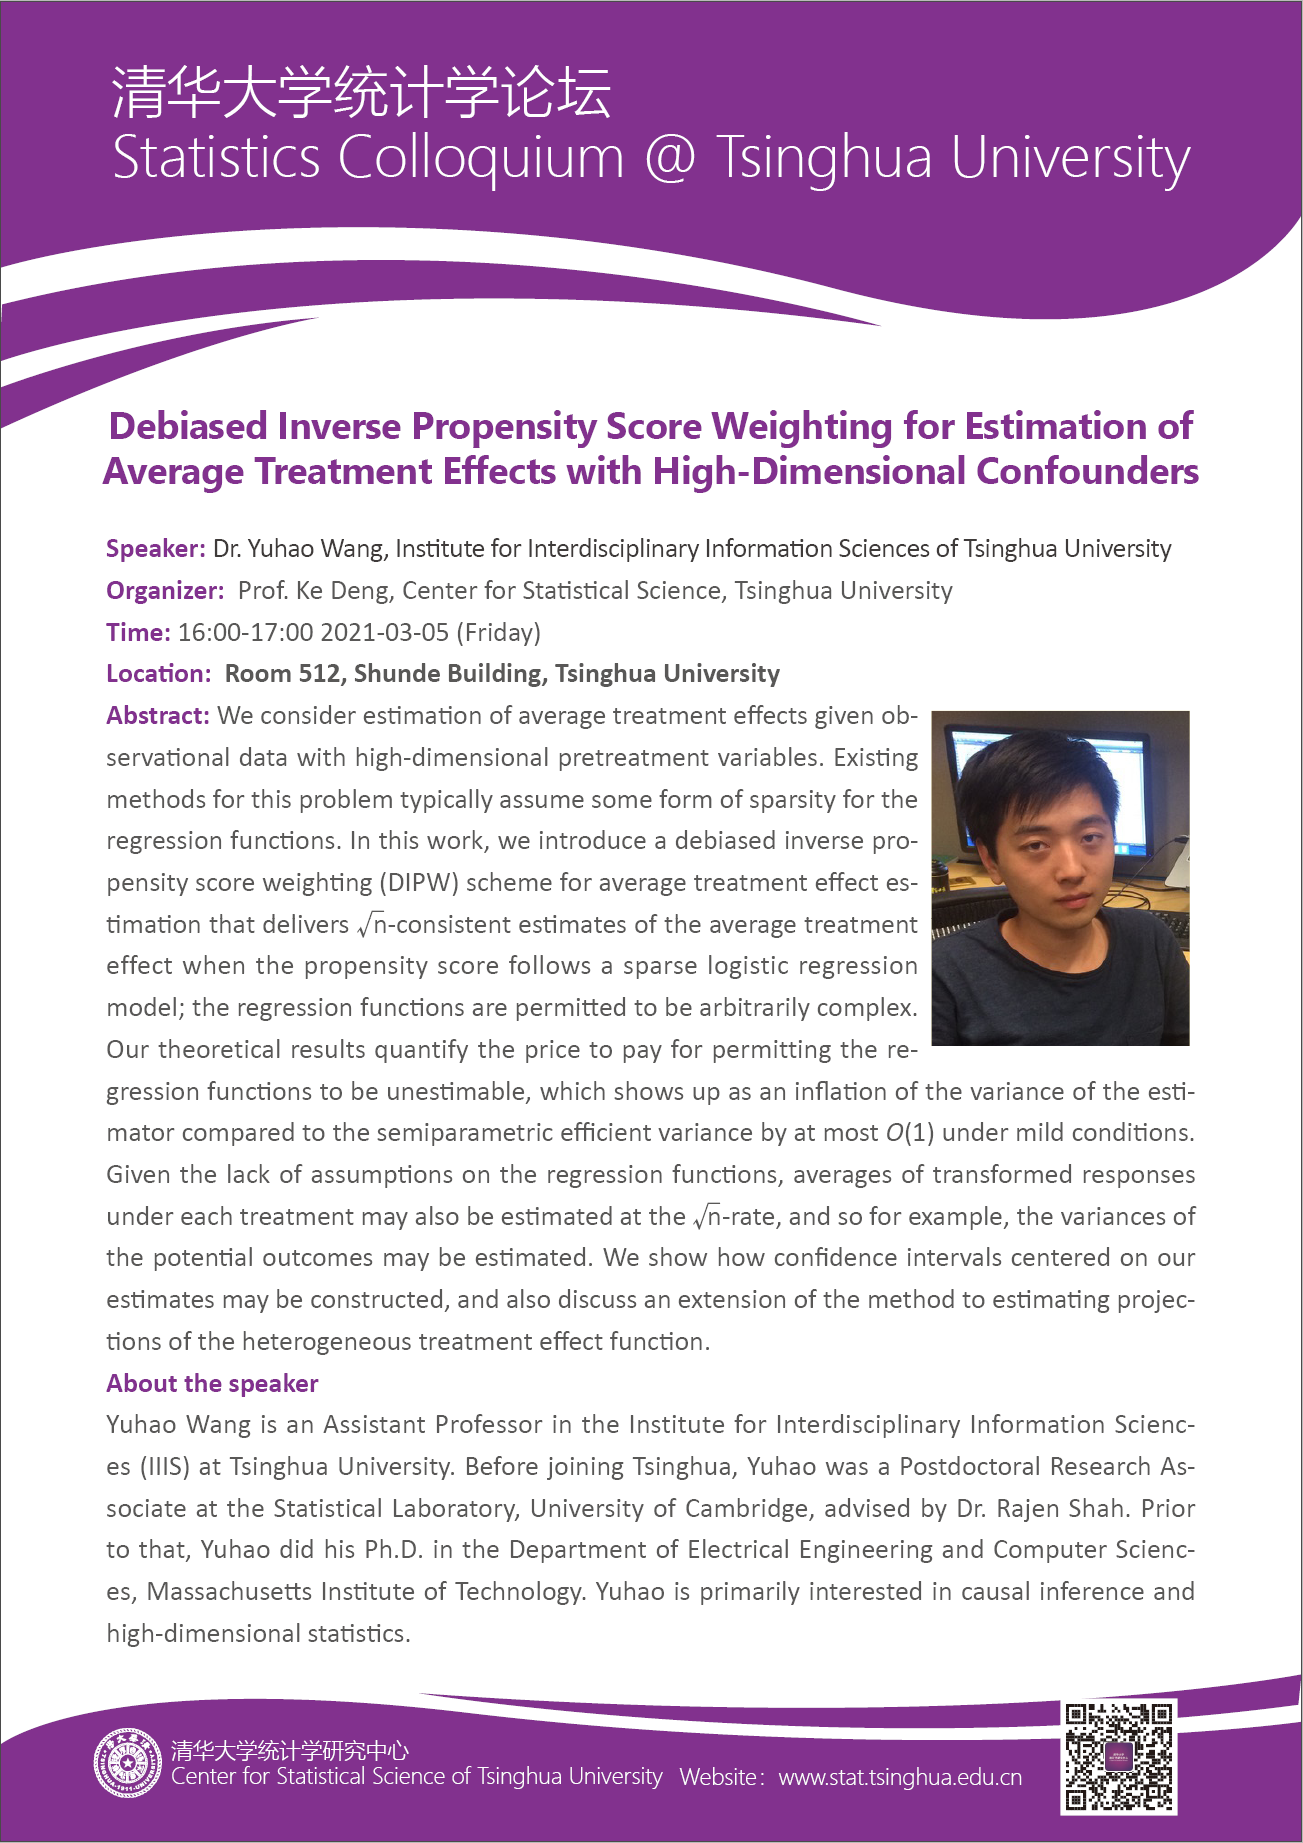 【统计学论坛】Debiased Inverse Propensity Score Weighting for Estimation of Average Treatment Effects with High-Dimensional Confounders